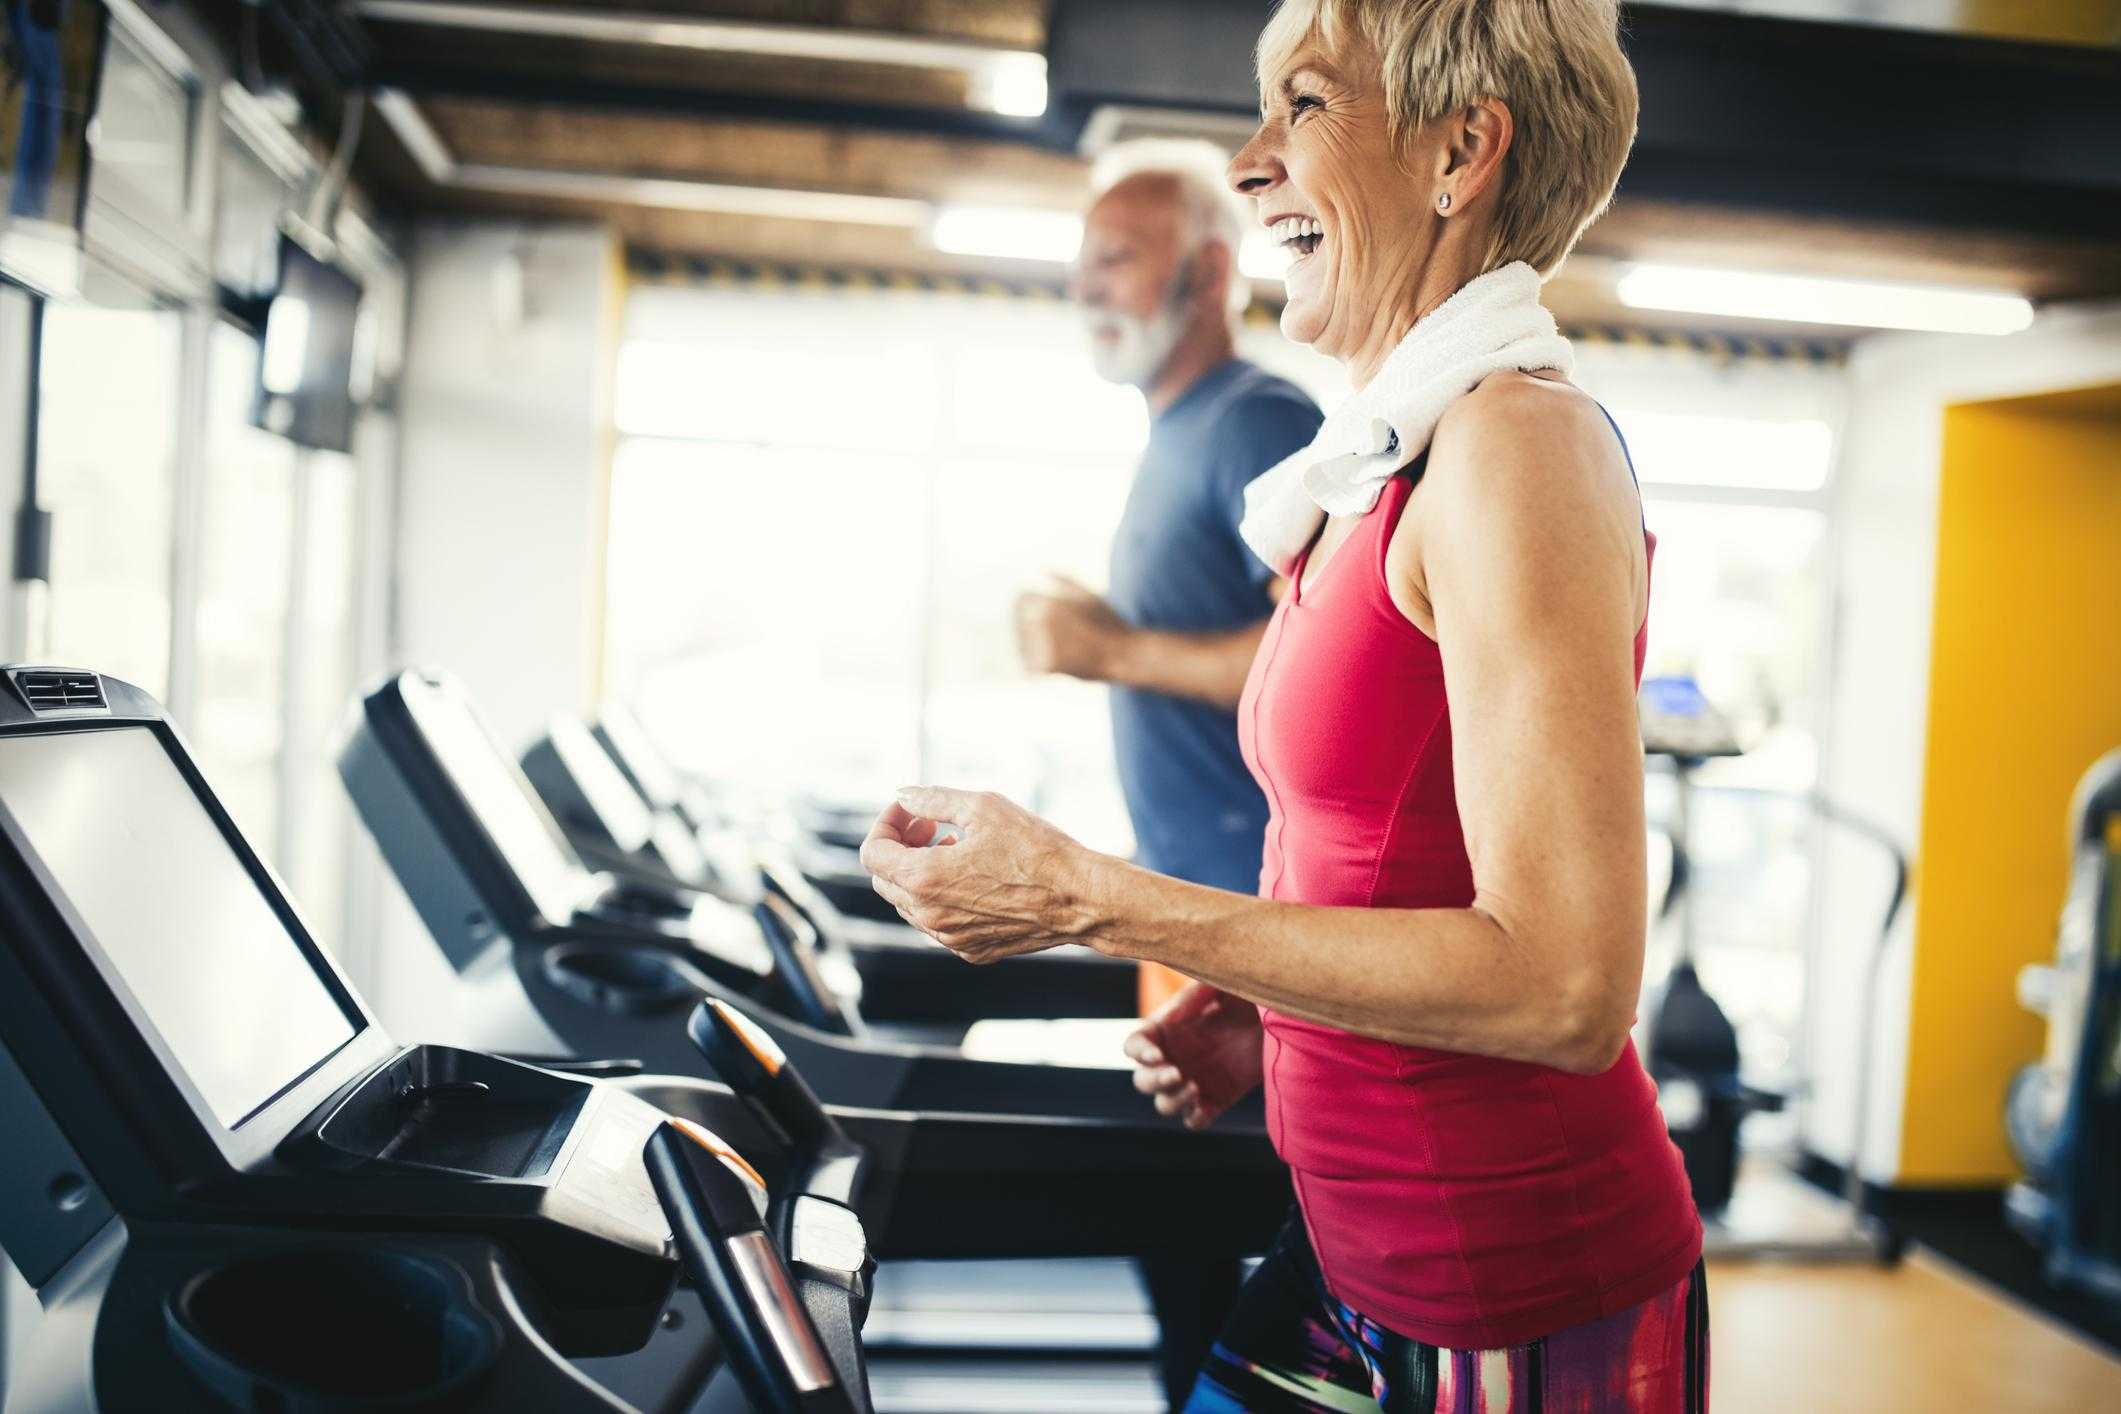 Тренировки после 40 лет для мужчин: каким спортом заняться, бодибилдинг, фитнес, можно ли накачать мышцы, физические упражнения